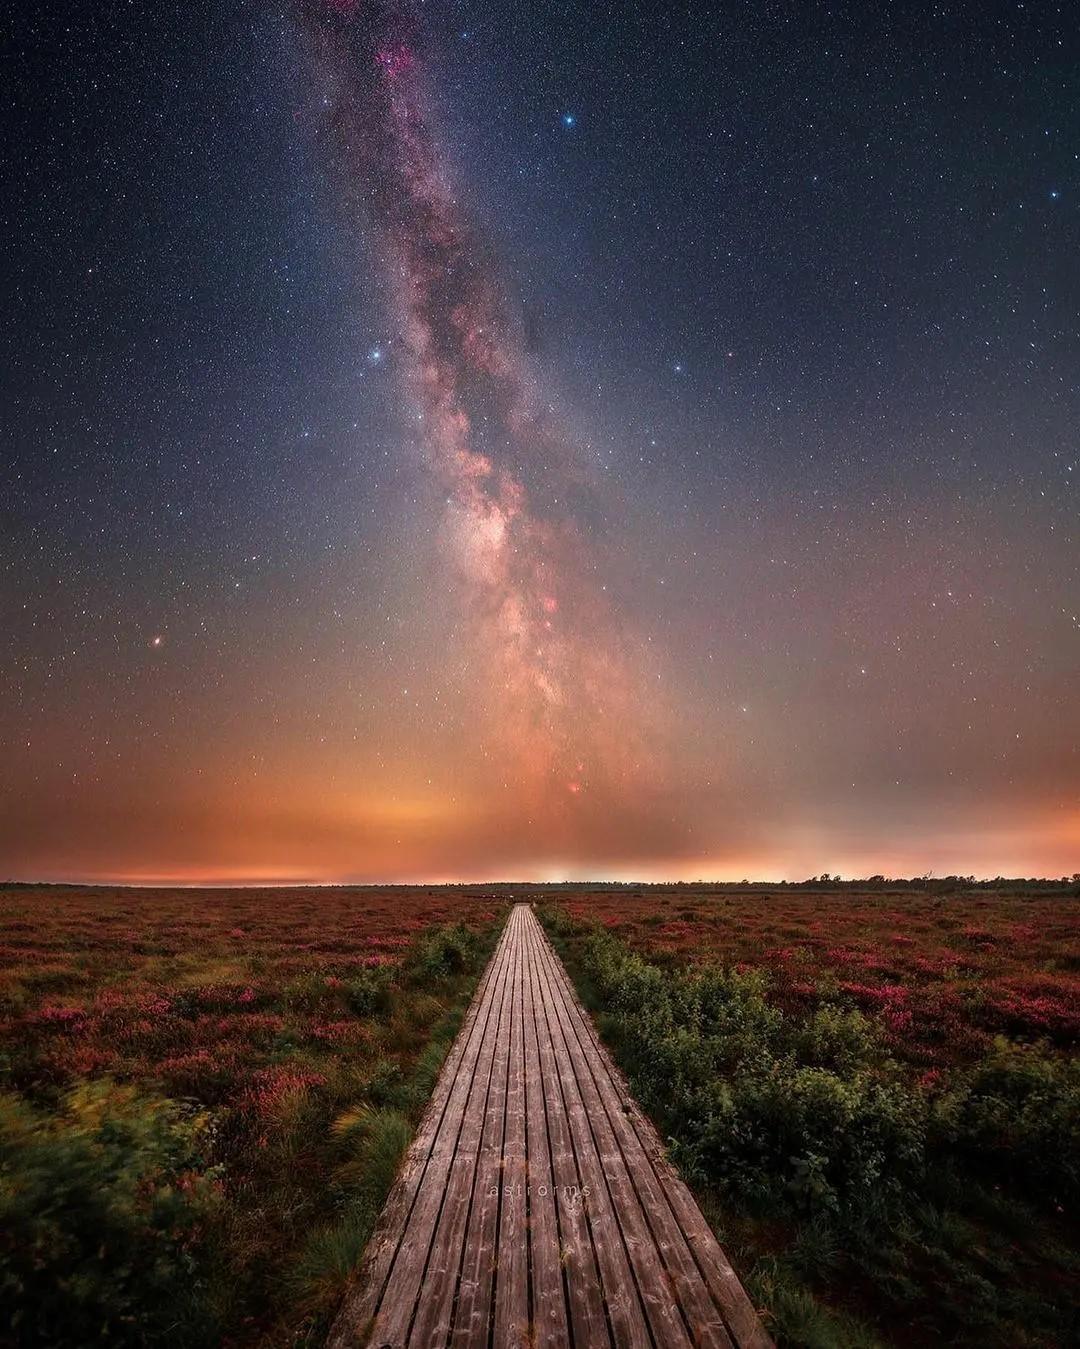  银河，来自摄影师Ruslan Merzlyakov。 